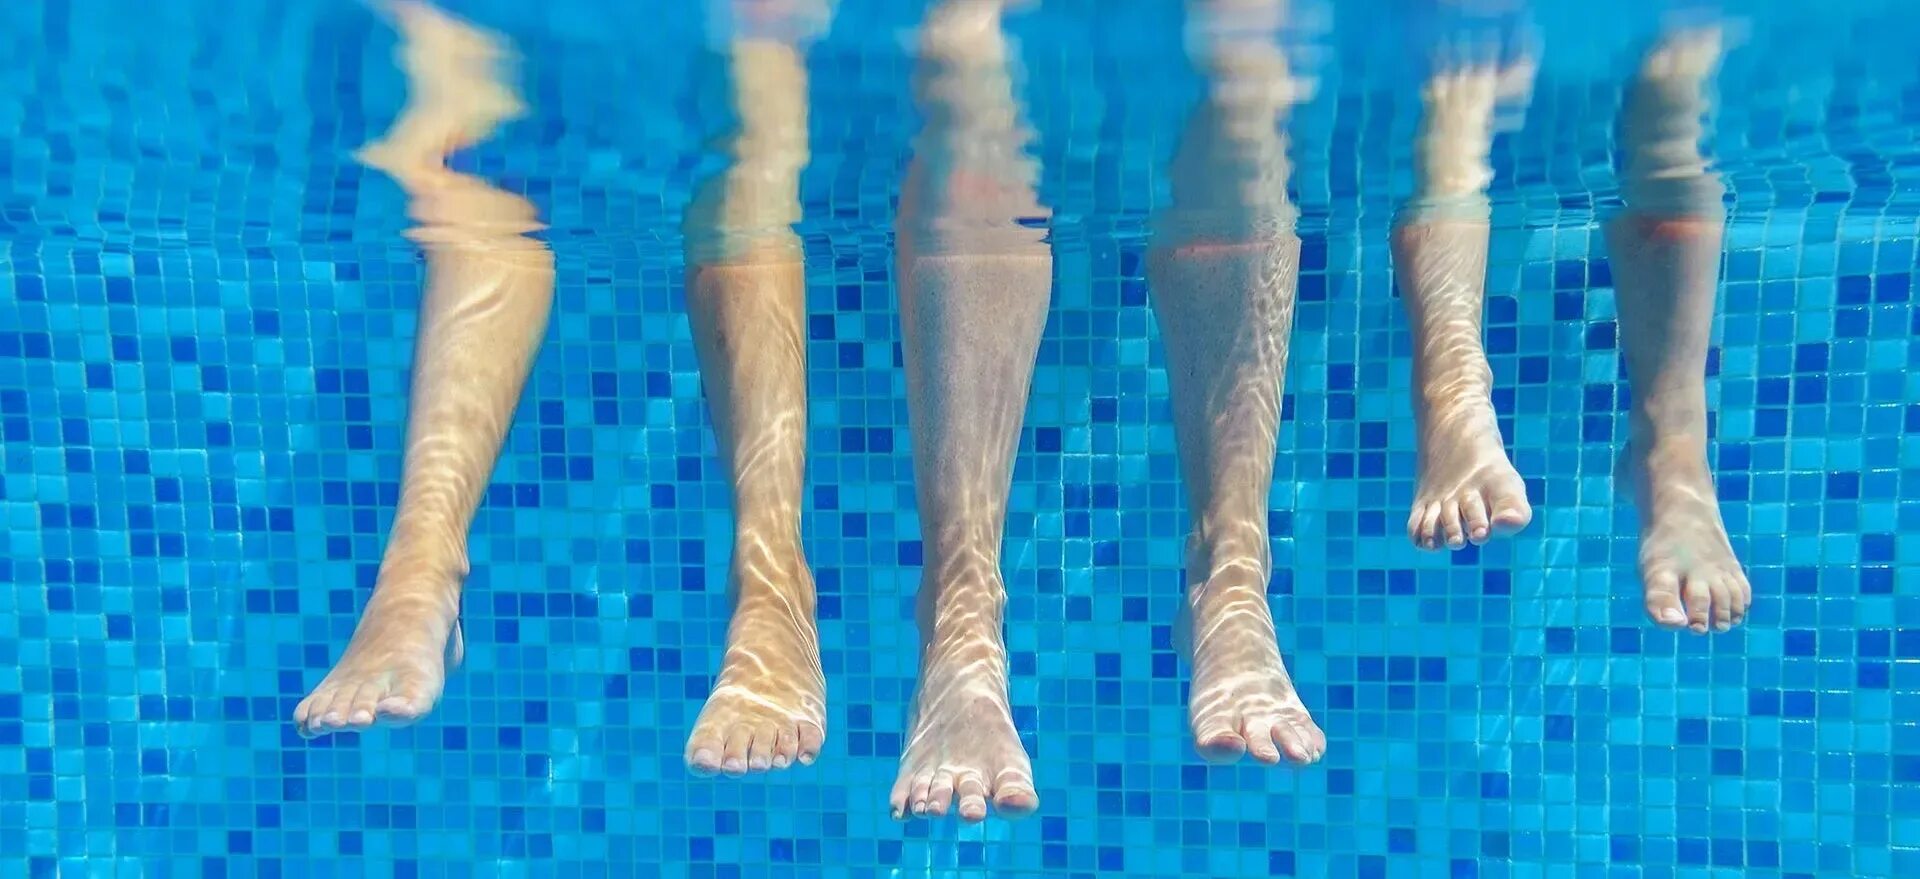 Судороги в ногах в воде. Ноги в бассейне девушка. Свело ногу в бассейне. Судороги в бассейне. Судороги в ногах в бассейне.